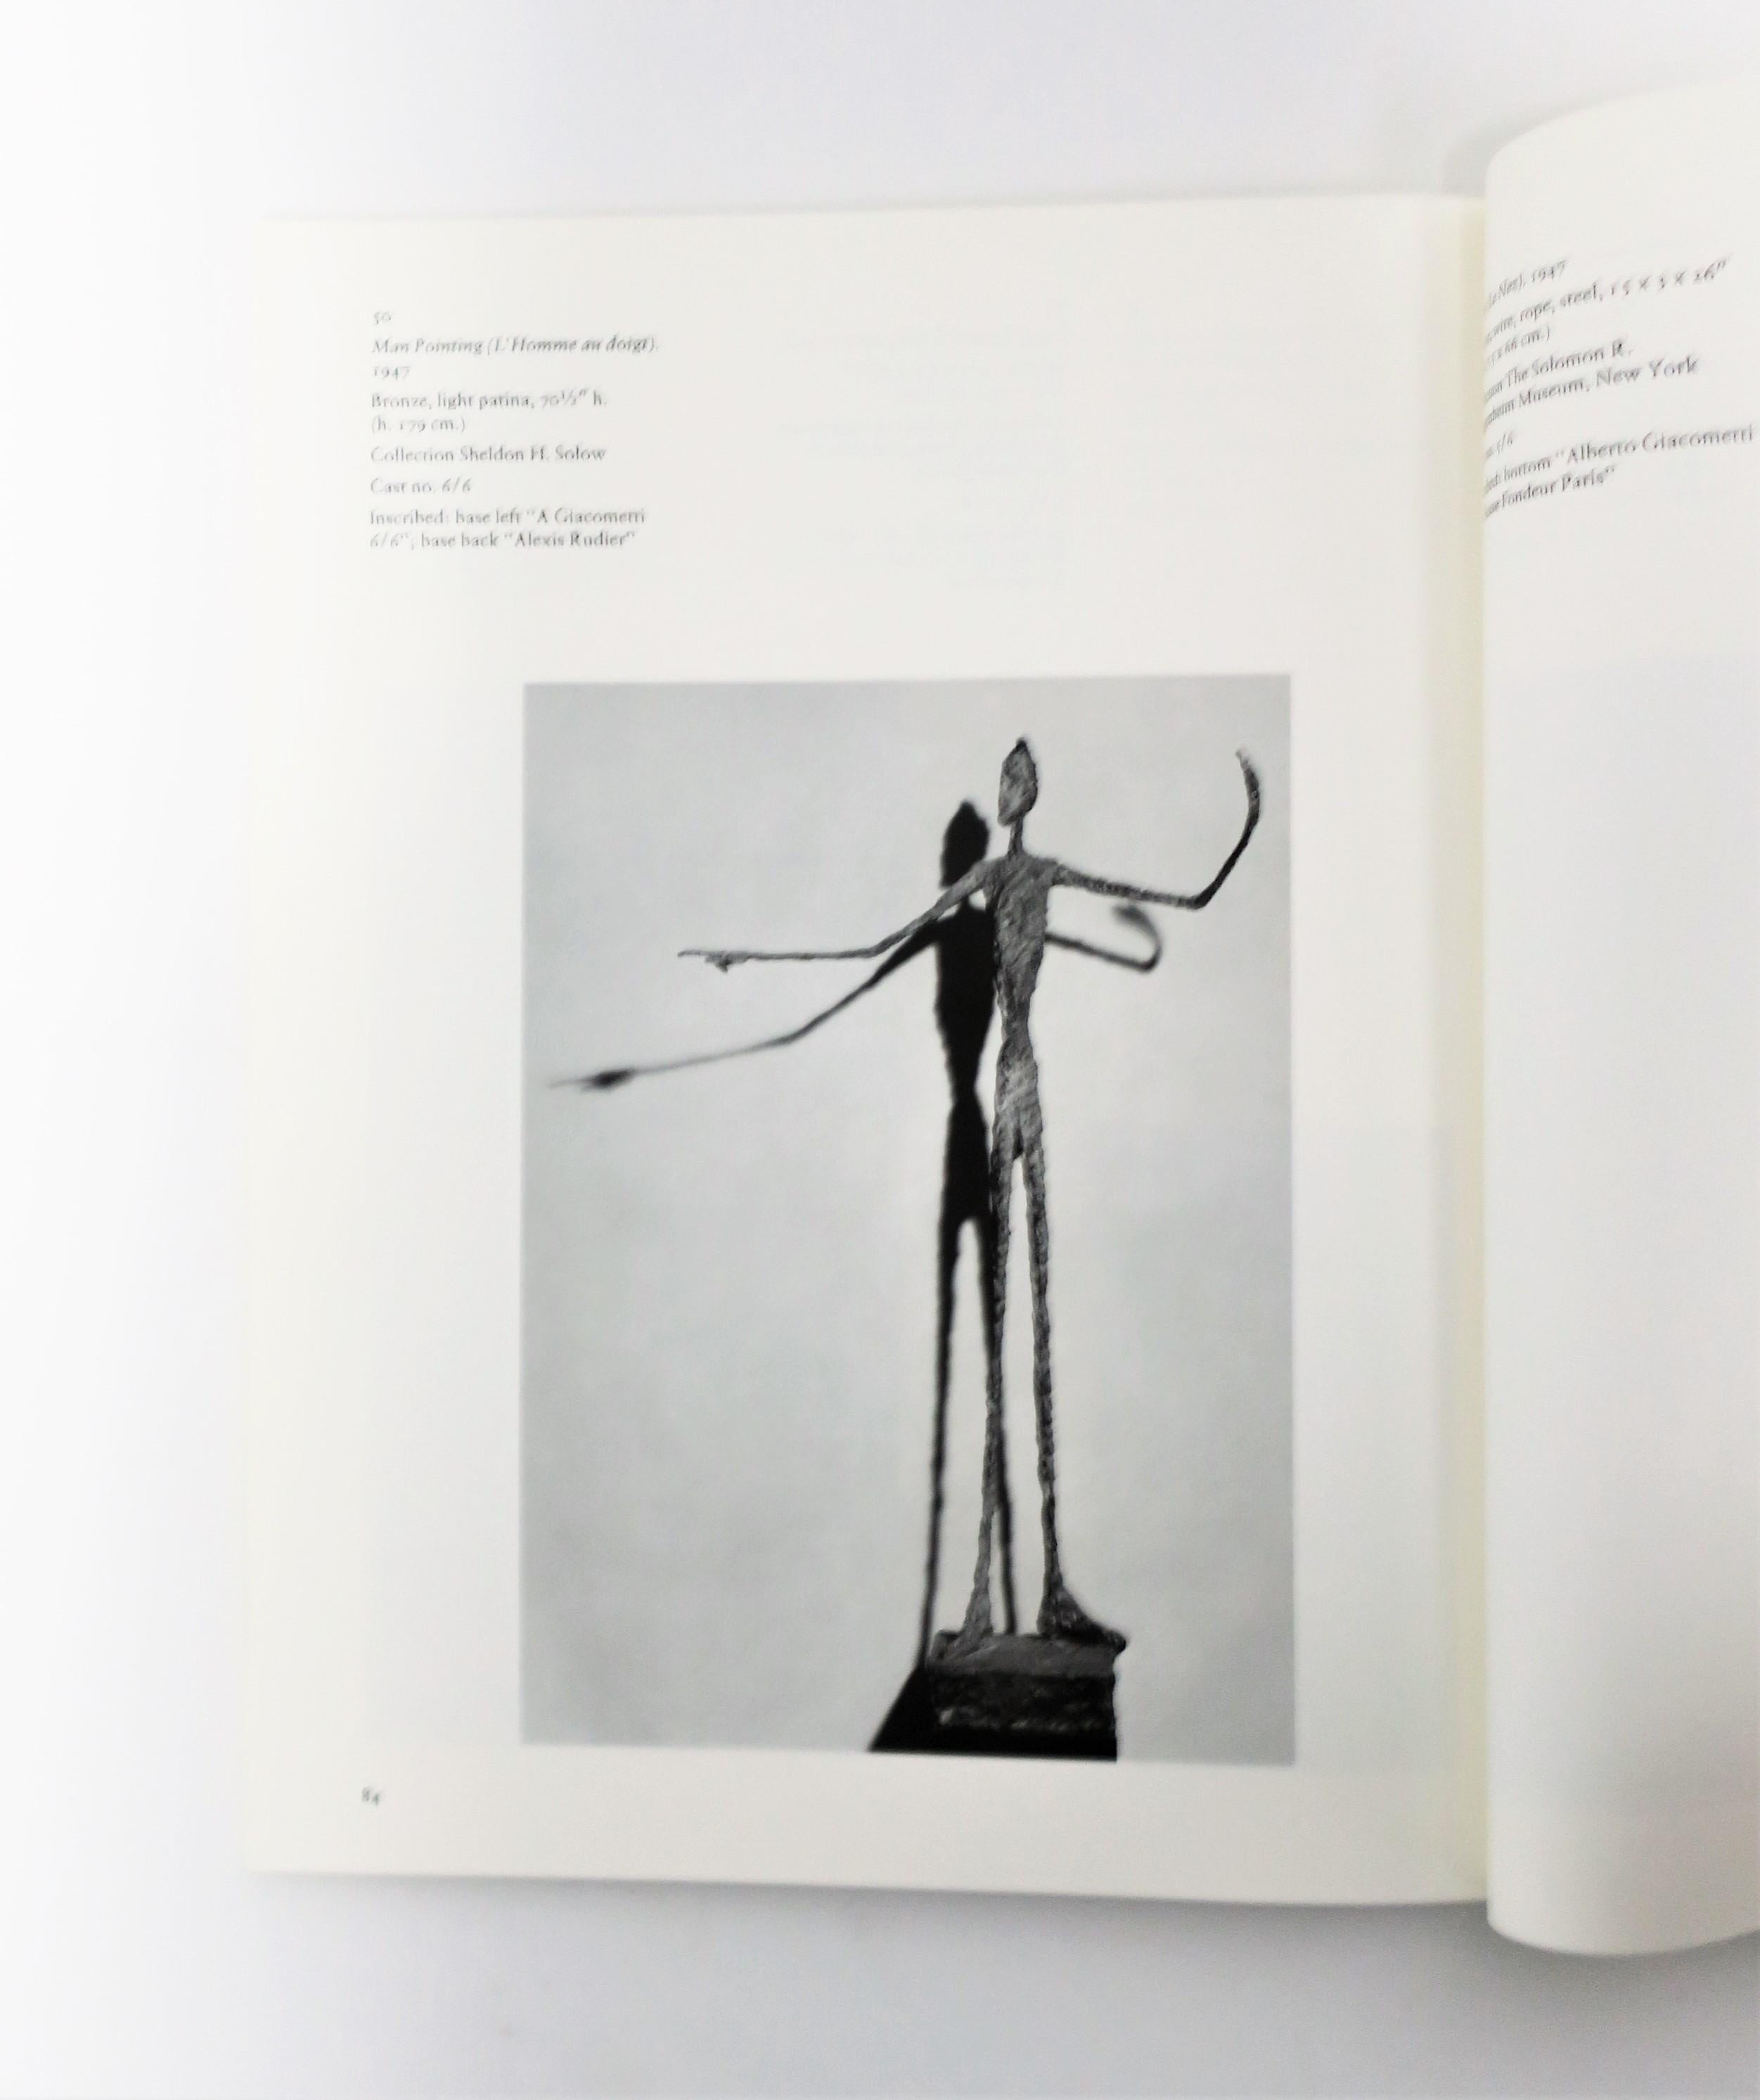 Alberto Giacometti A Retrospective Exhibition Book, 1974, New York 6